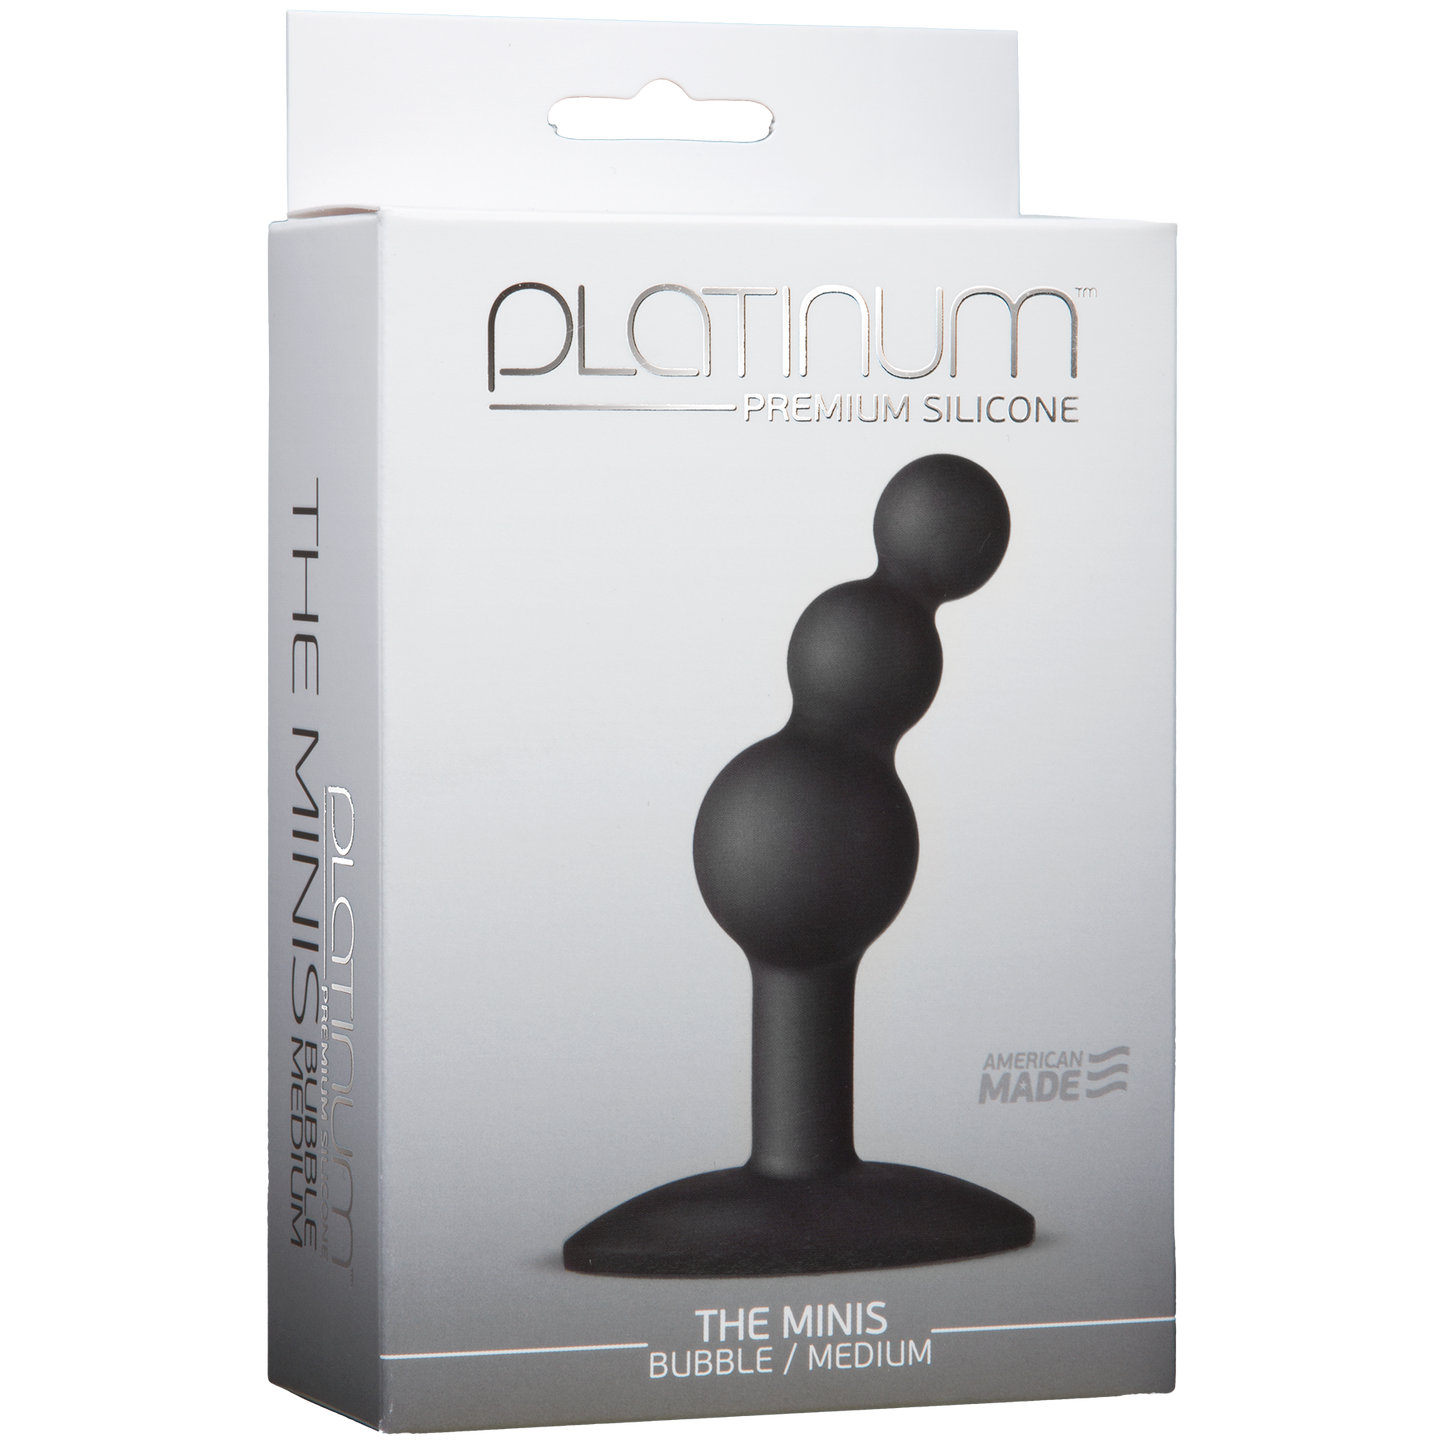 Platinum Premium Silicone The Mini's Bubble - Medium, Black - Thorn & Feather